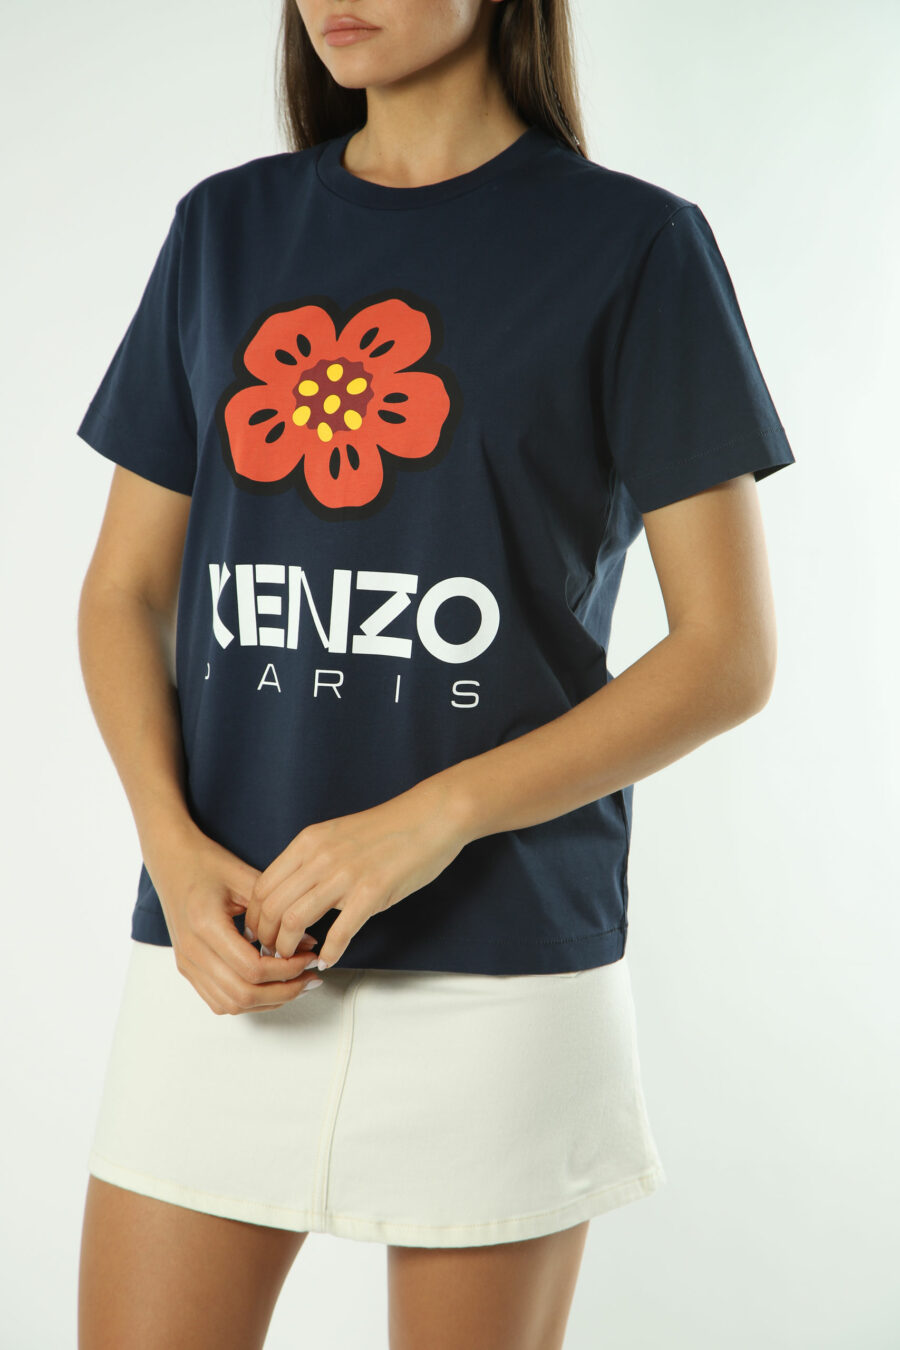 Blue T-shirt with orange flower maxilogo - Photos 1398